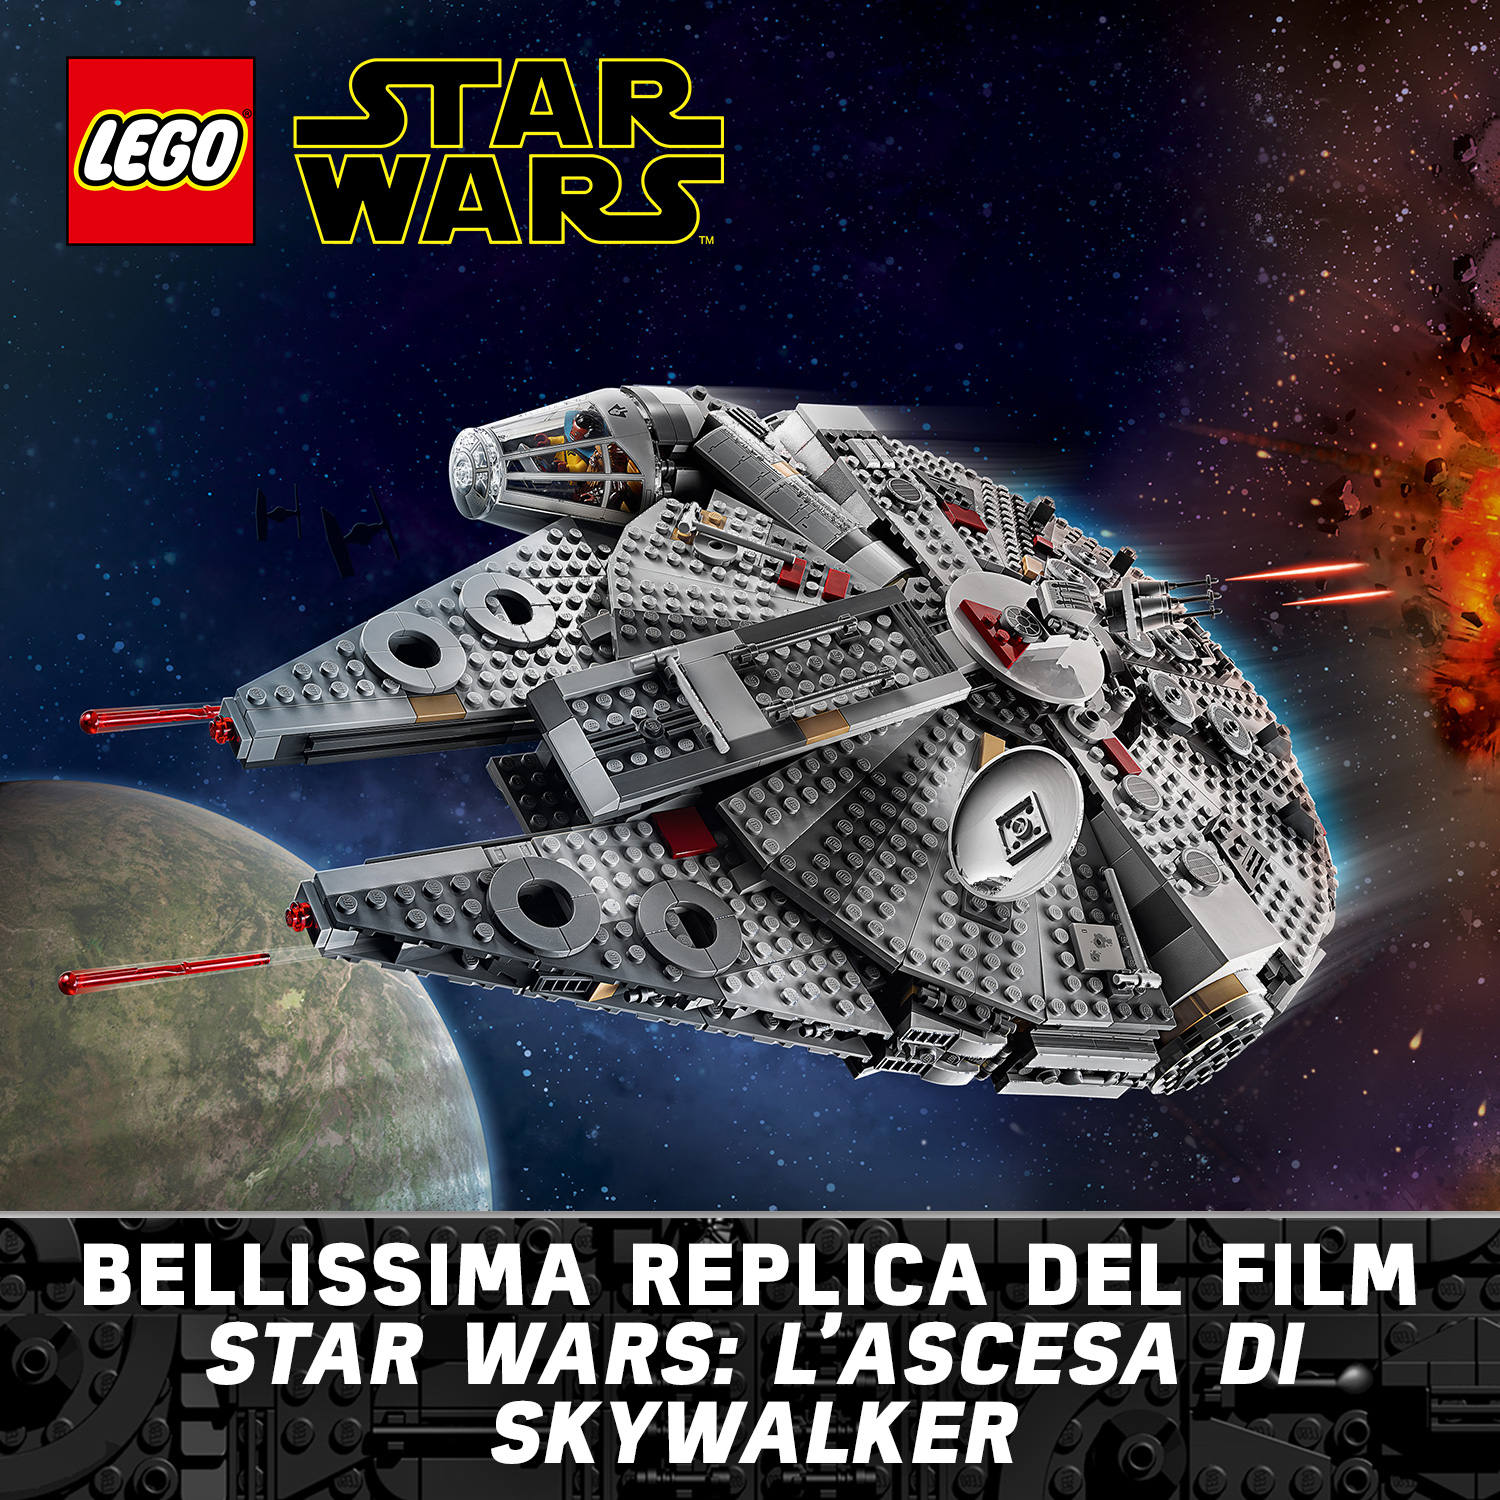 LEGO Star Wars Millennium Falcon, Set di Costruzioni dell'Iconica Astronave, co 75257, , large